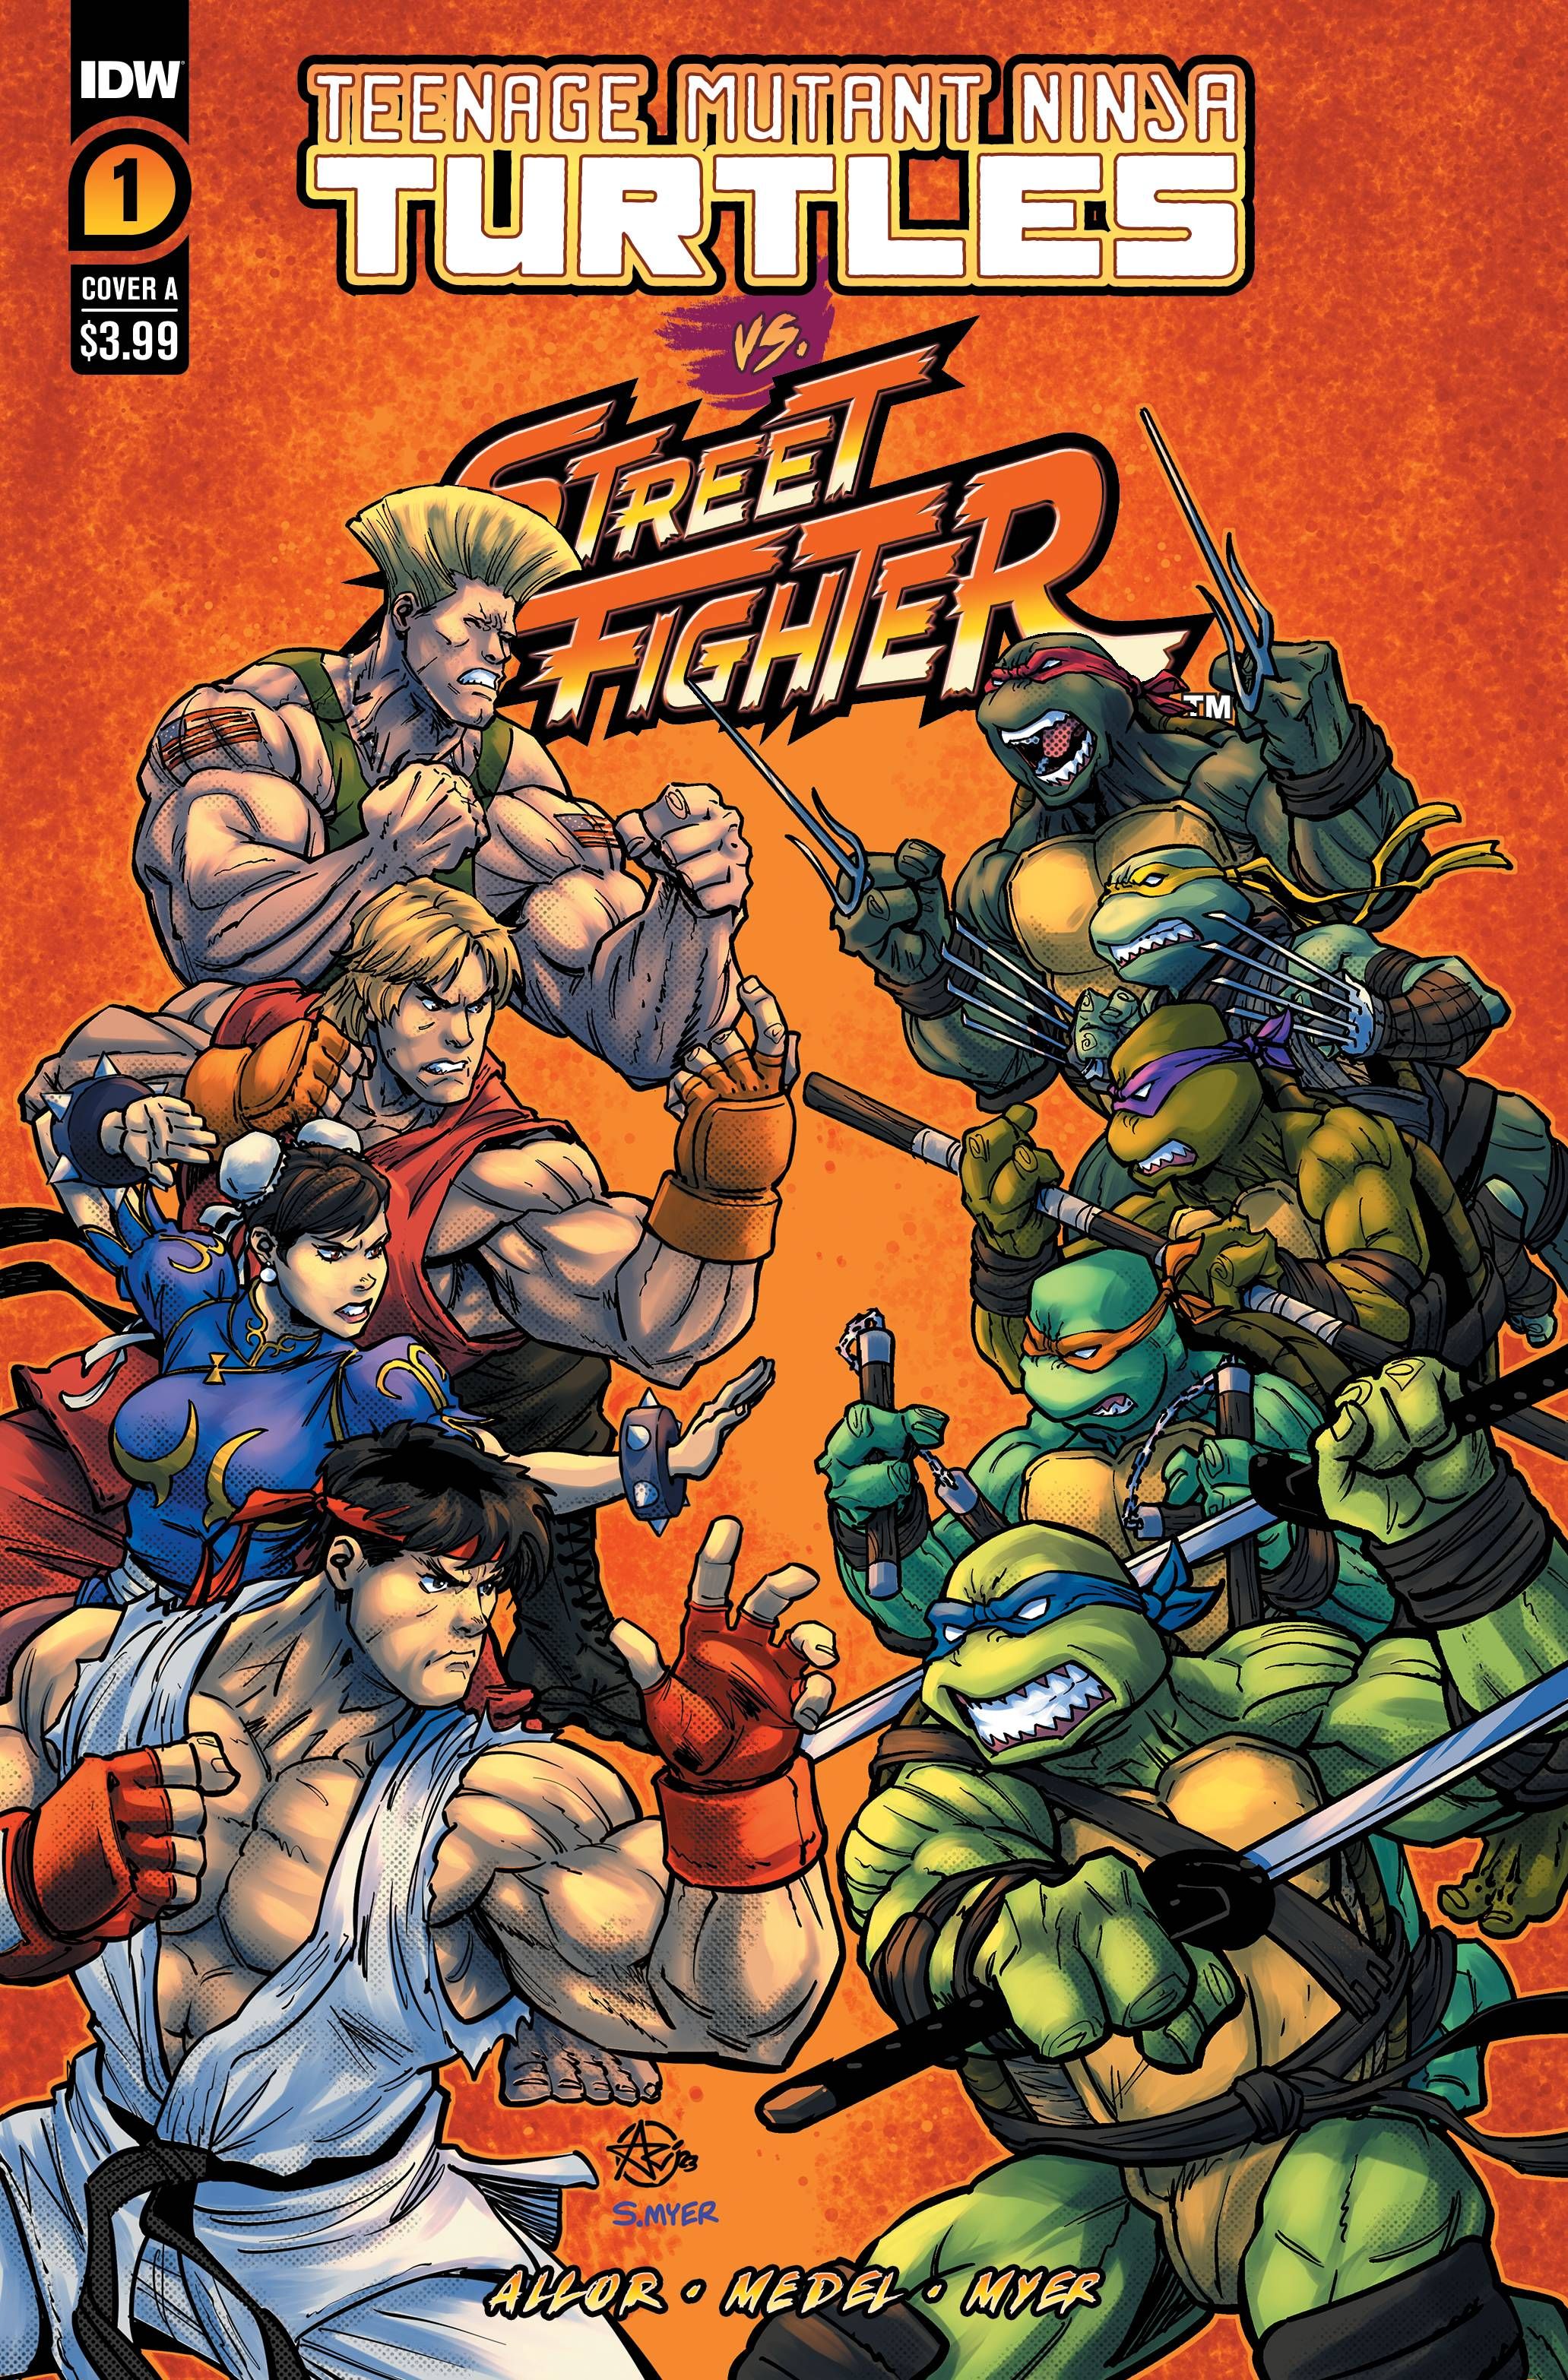 Teenage Mutant Ninja Turtles vs. Street Fighter #1 Comic